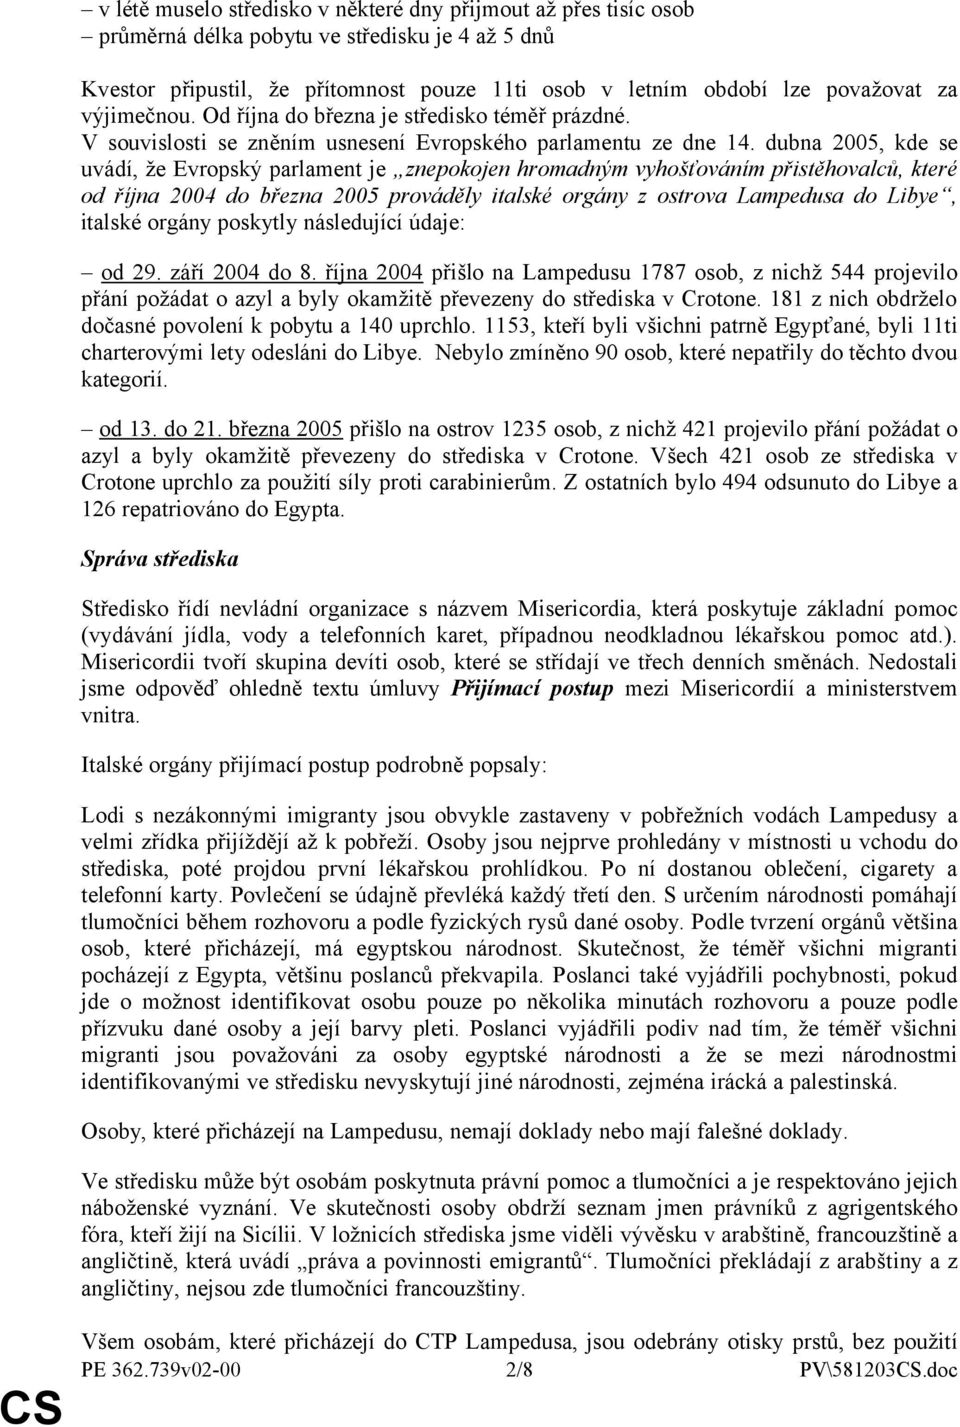 dubna 2005, kde se uvádí, že Evropský parlament je znepokojen hromadným vyhošťováním přistěhovalců, které od října 2004 do března 2005 prováděly italské orgány z ostrova Lampedusa do Libye, italské